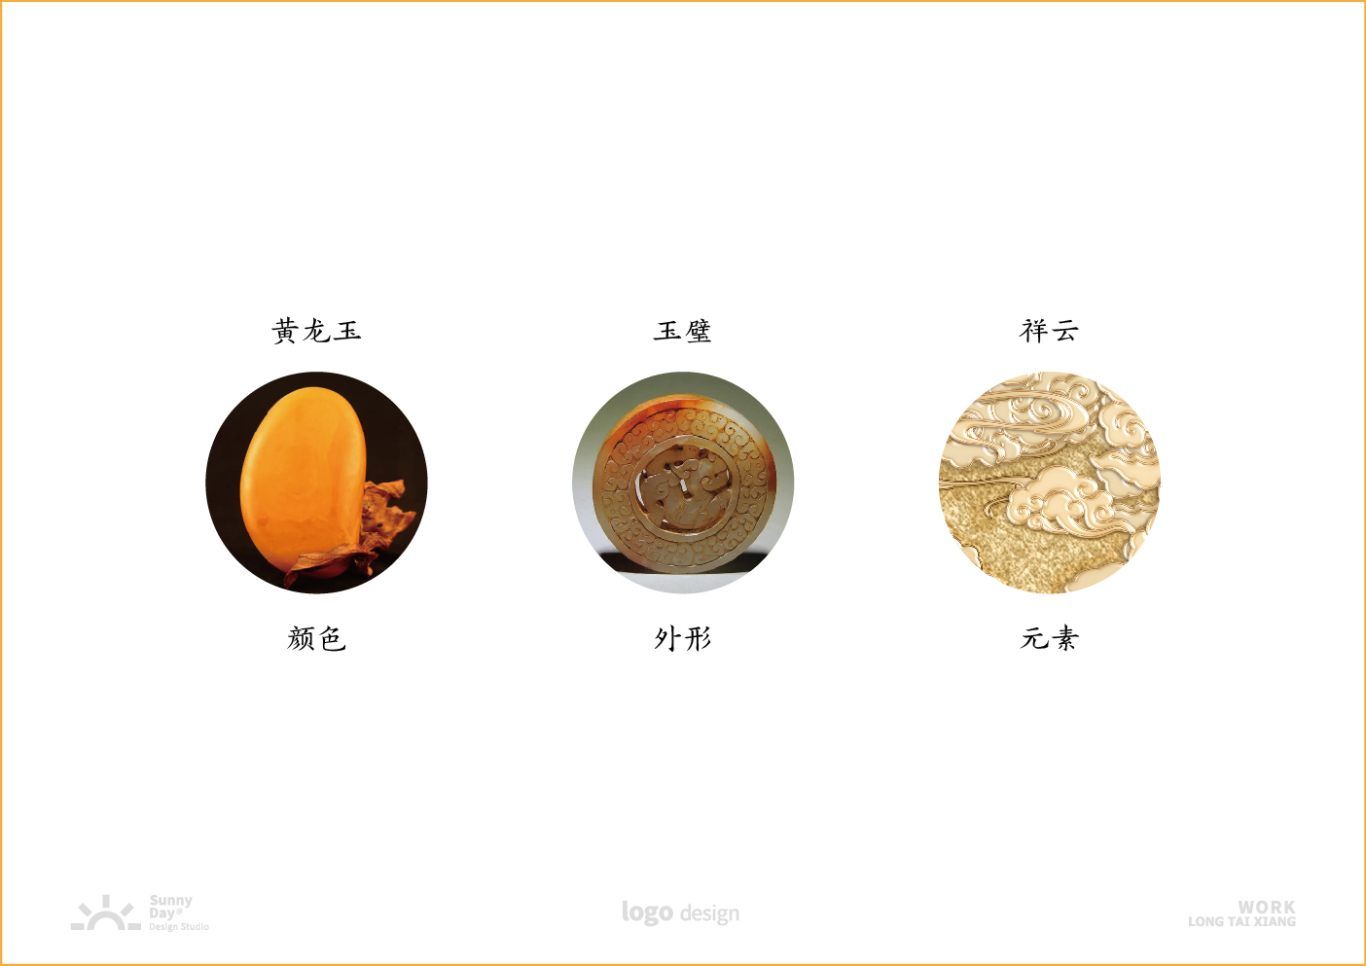 隆泰祥黃龍玉品牌LOGO設計圖1